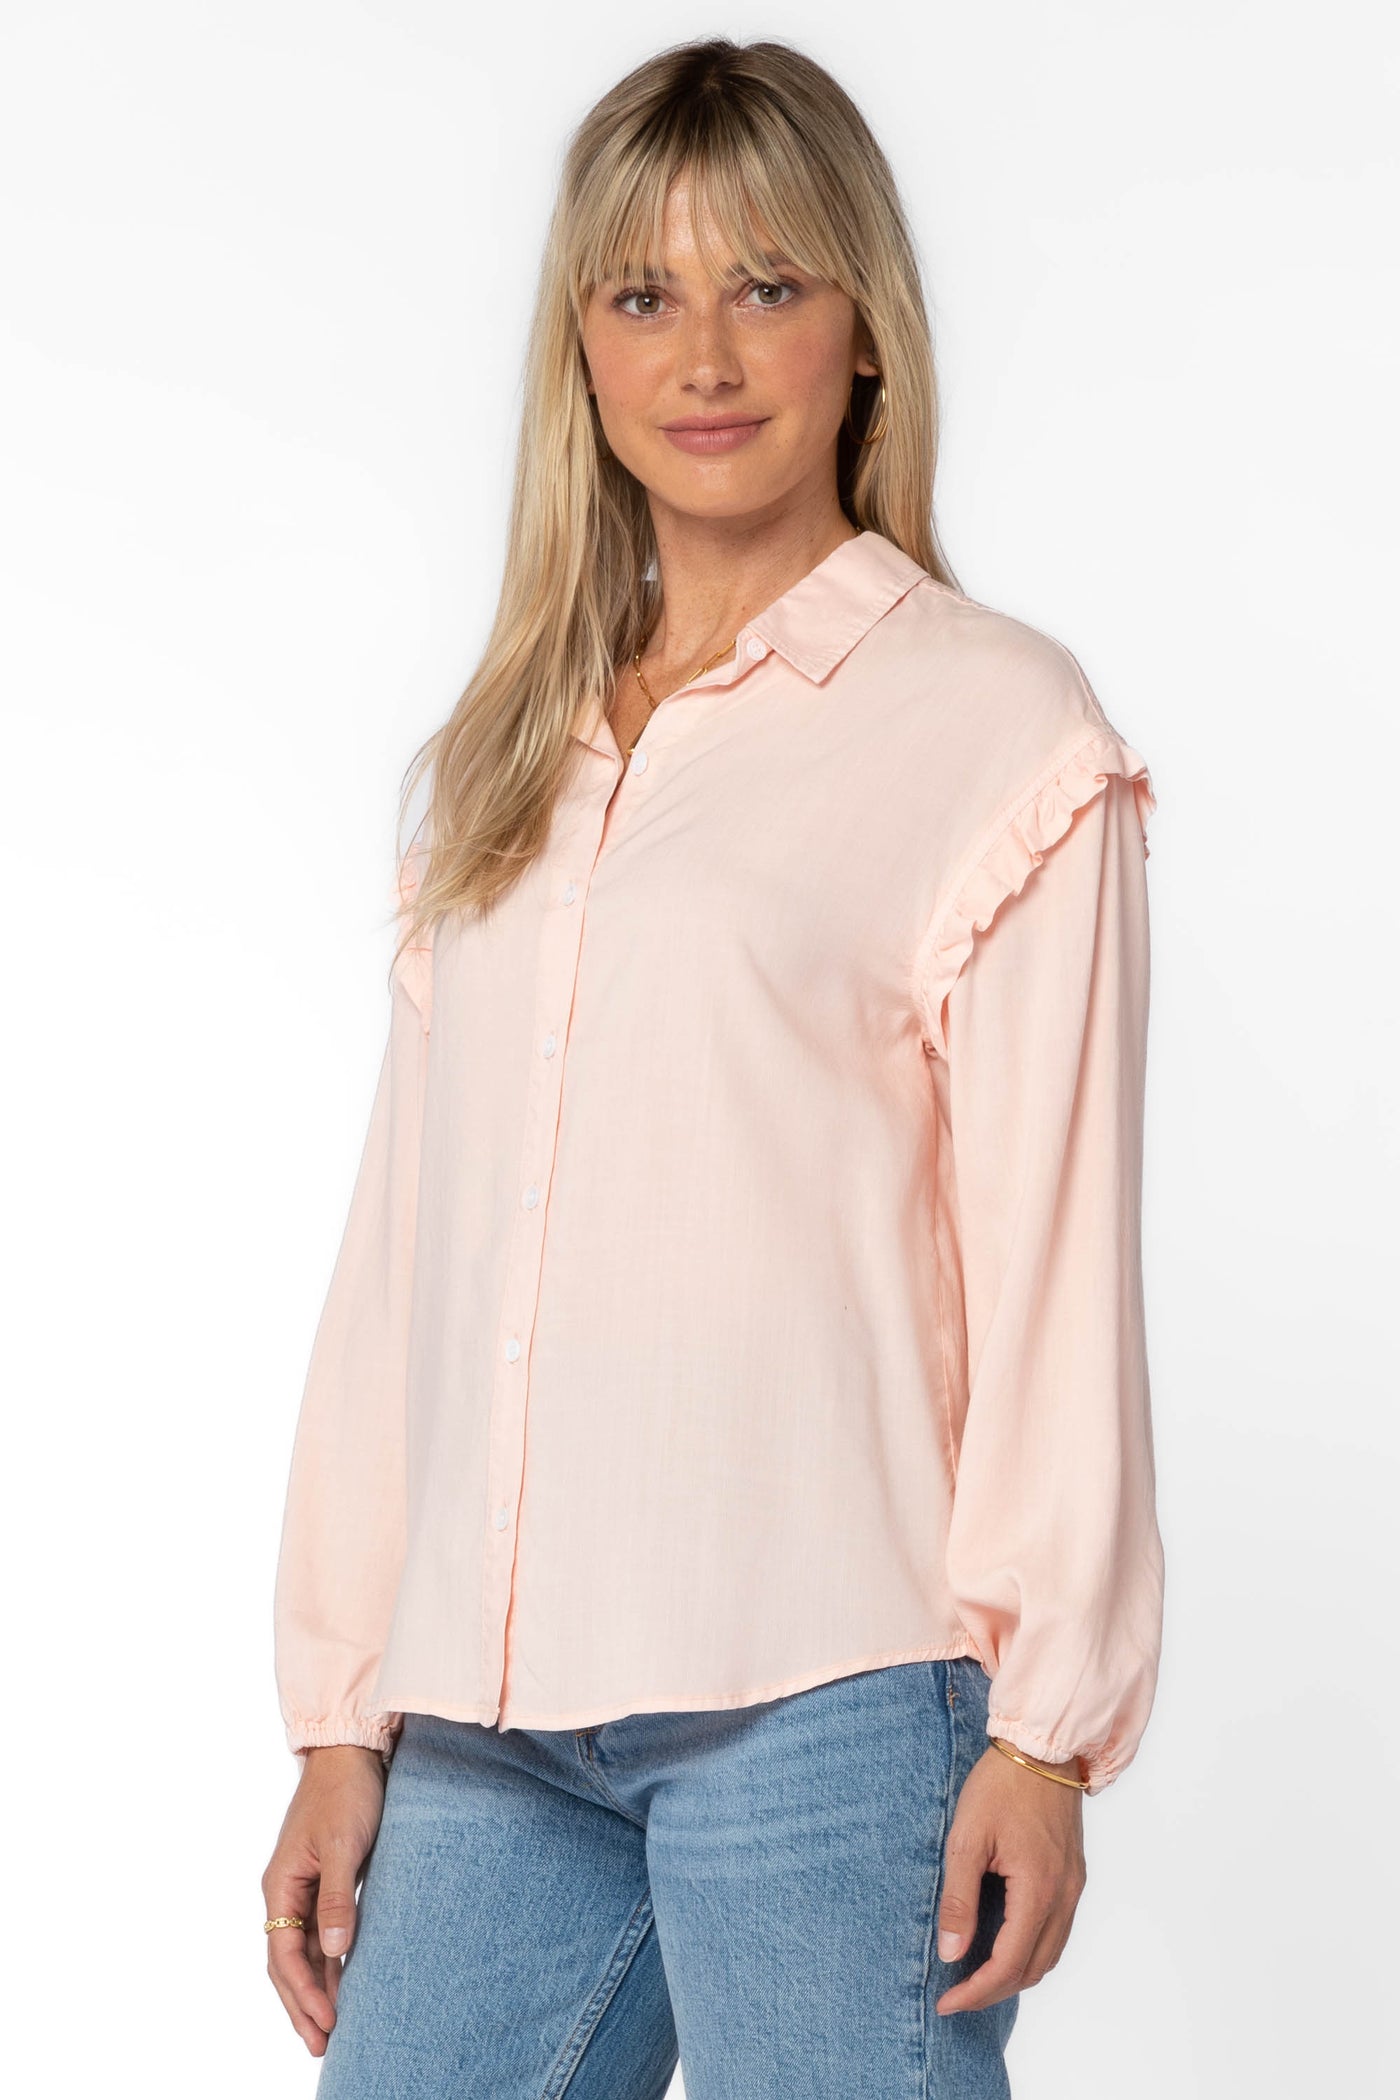 Sylvie Baby Pink Shirt - Tops - Velvet Heart Clothing